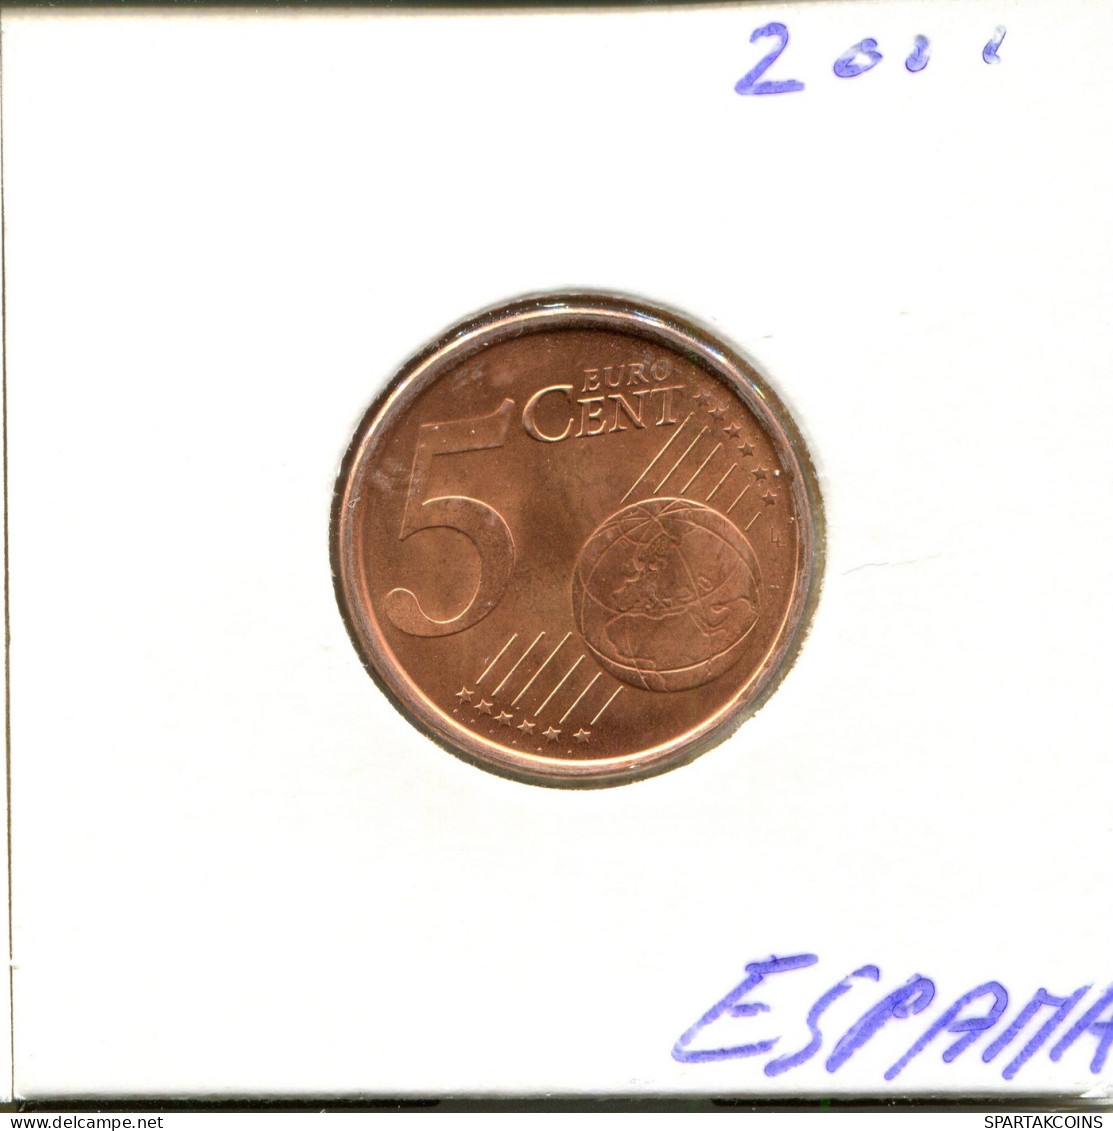 5 EURO CENTS 2001 SPAIN Coin #EU356.U.A - Spain